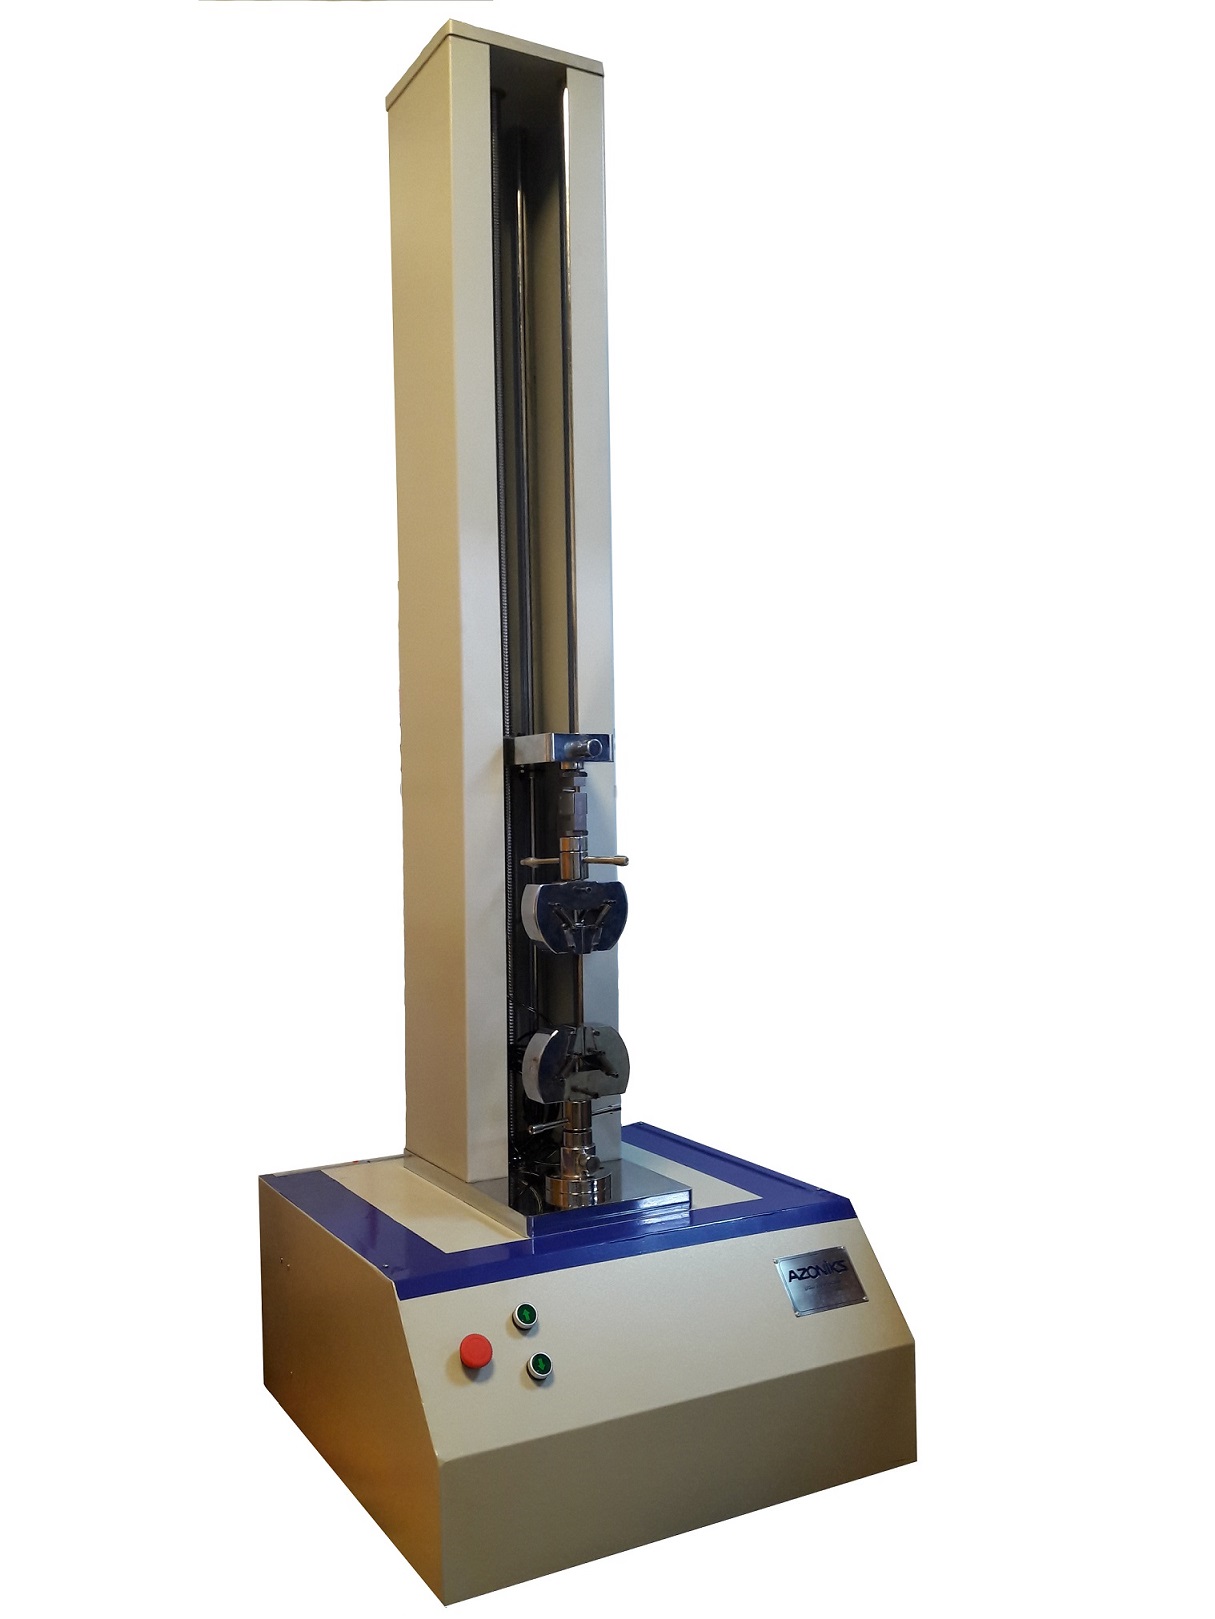 دستگاه تست کشش و فشار یونیورسال سرو الکتریکال 5کیلونیوتن (500کیلوگرم)